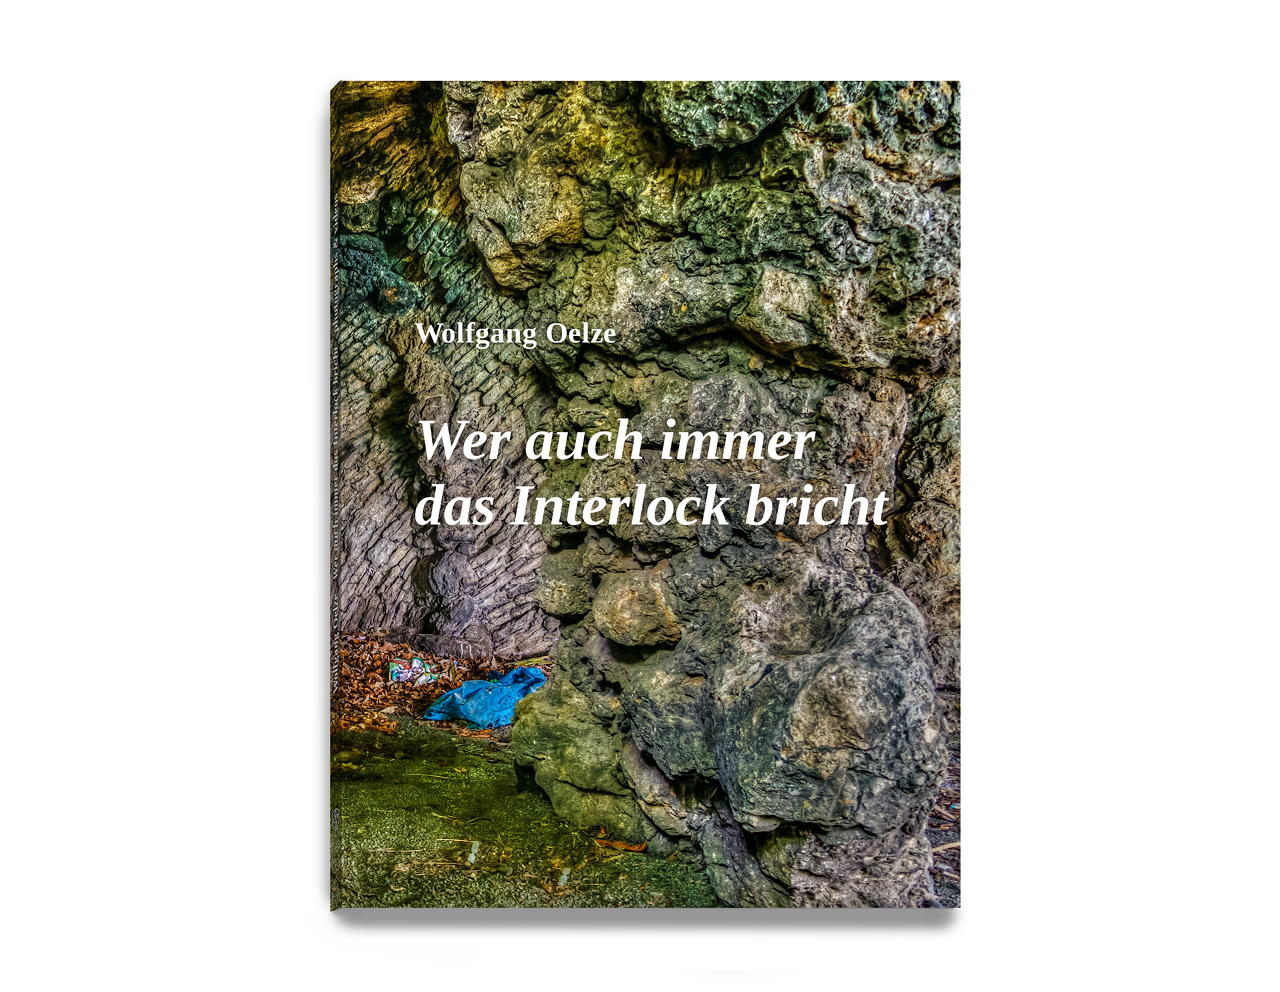 Wer auch immer das Interlock bricht; Artist book by Wolfgang Oelze